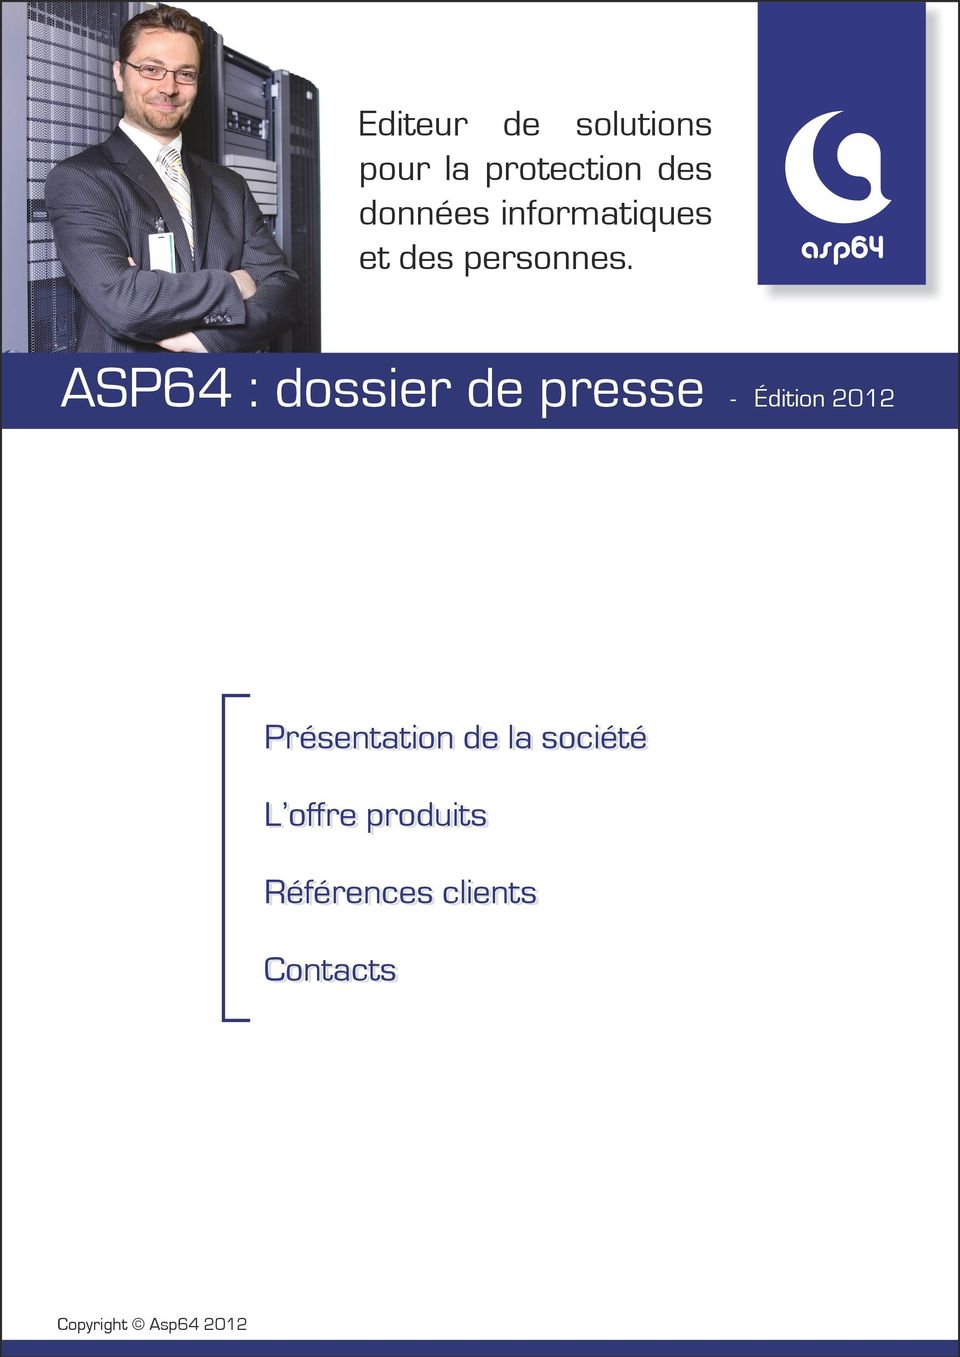 asp64 ASP64 : dossier de presse - Édition 2012